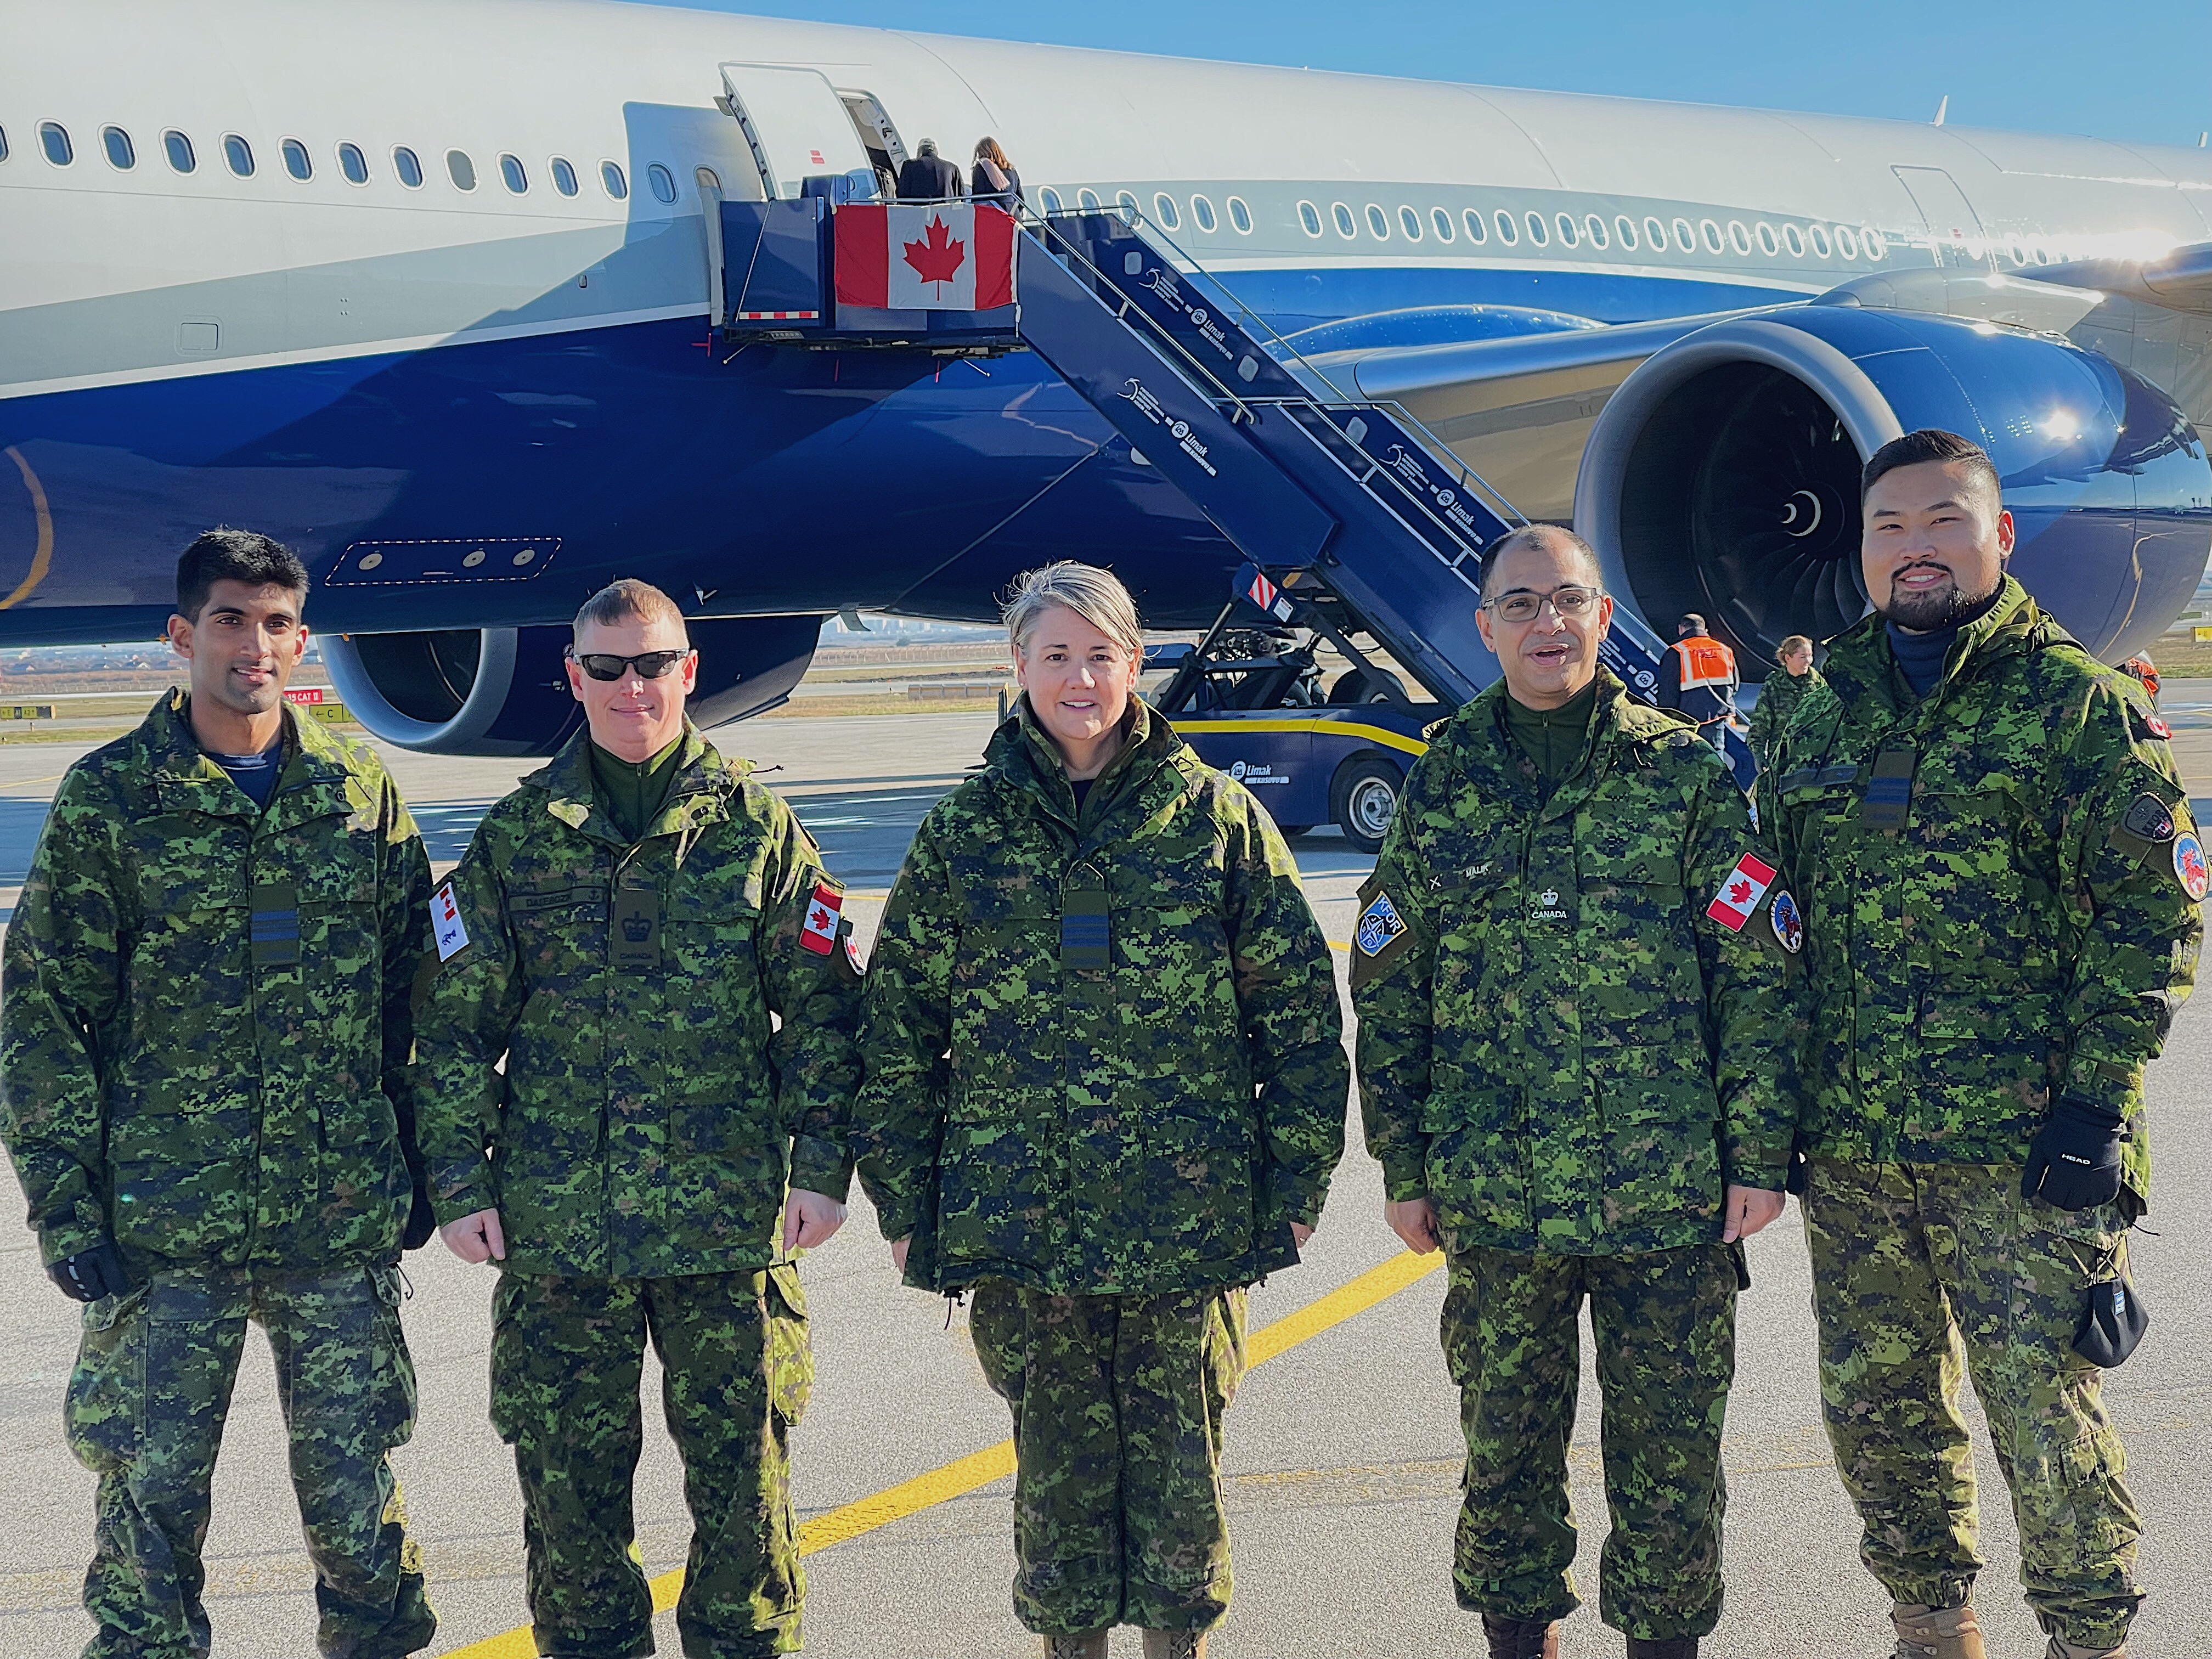 Cinq membres de la Roto 25 accompagnent des dignitaires qui quittent l’aéroport international de Pristina, au Kosovo, le 8 décembre 2021.